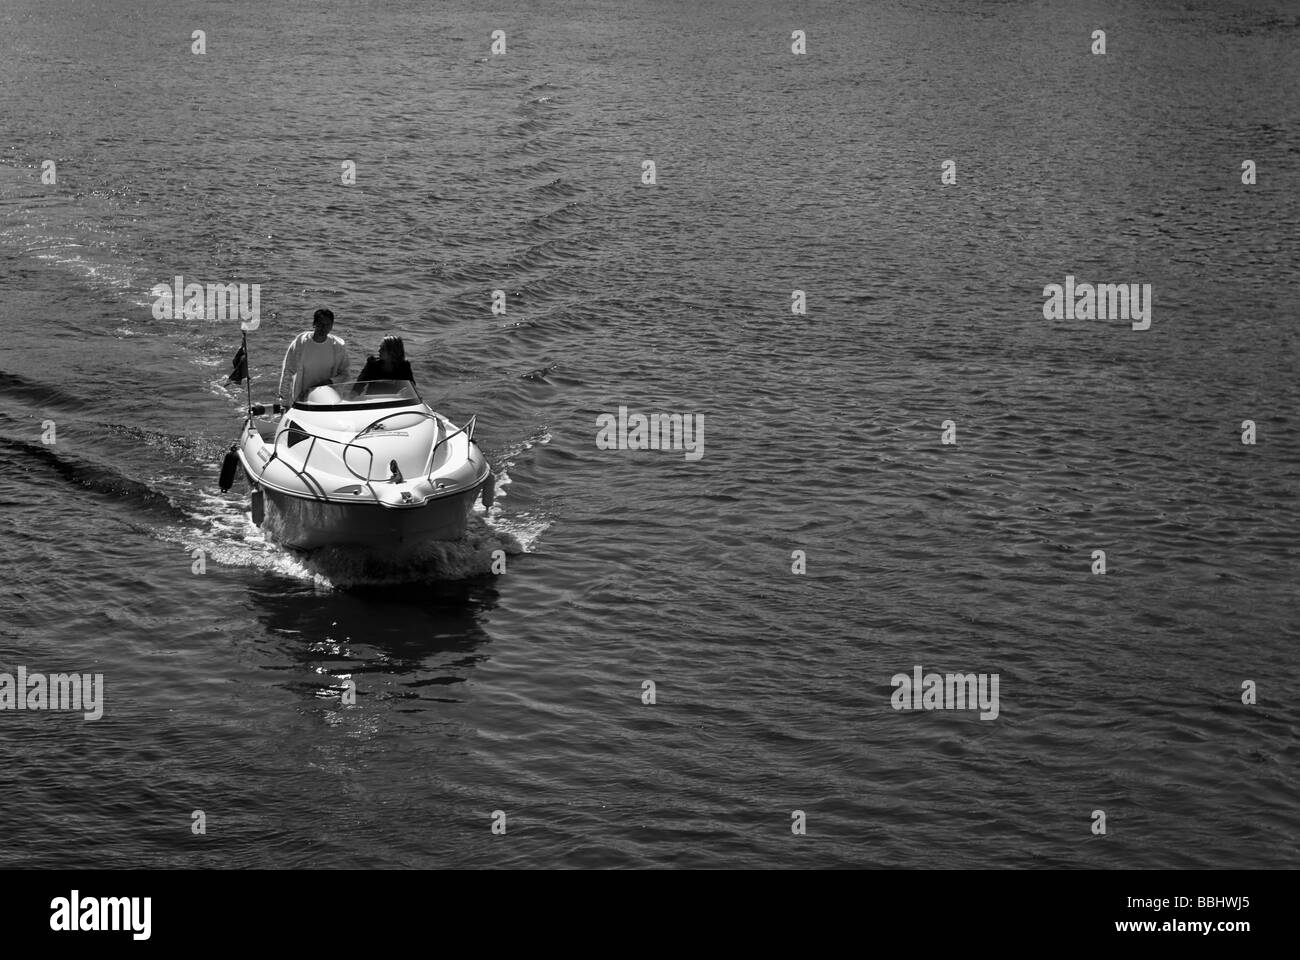 Bianco e nero della fotografia di un motoscafo veloce in movimento sull'acqua Foto Stock